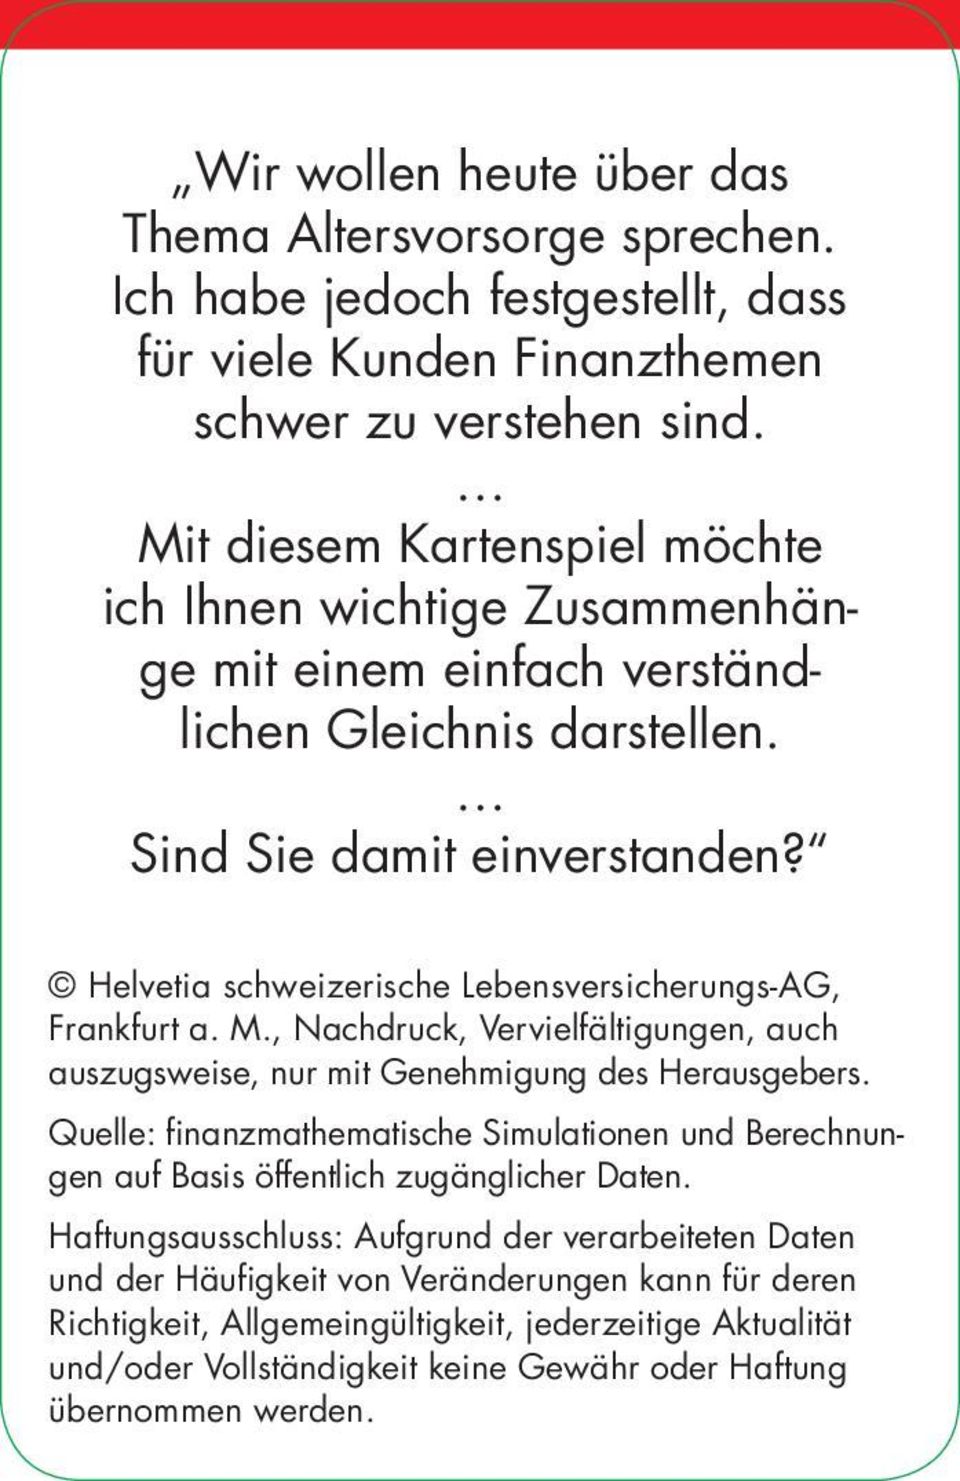 Helvetia schweizerische Lebensversicherungs-AG, Frankfurt a. M., Nachdruck, Vervielfältigungen, auch auszugsweise, nur mit Genehmigung des Herausgebers.